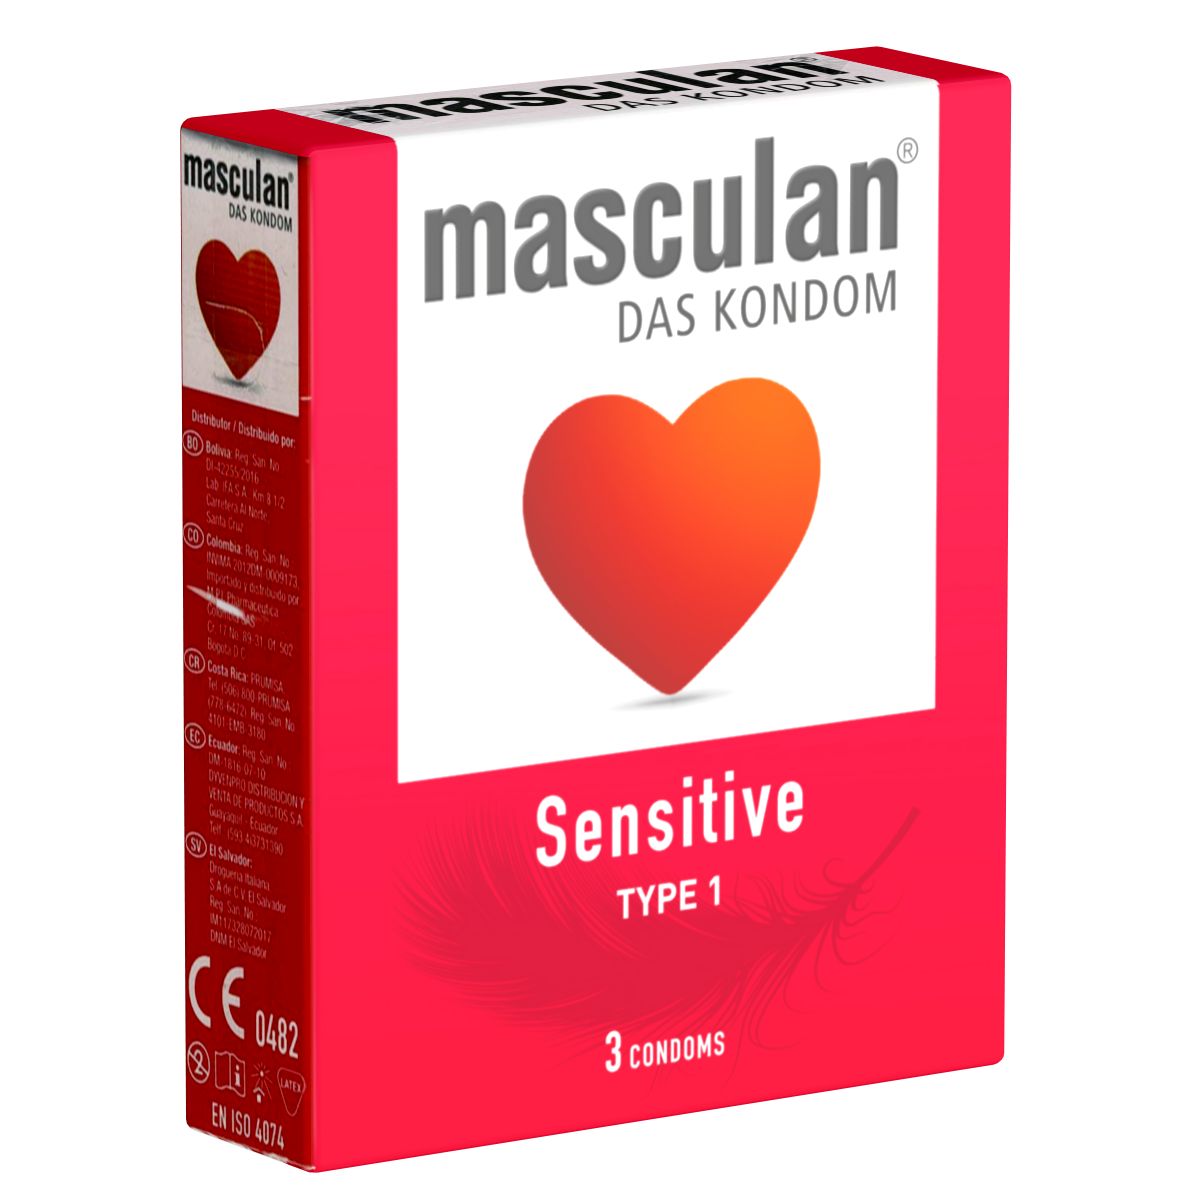 Masculan *Typ 1* (sensitive) zarte rosa Kondome für sinnliche Momente